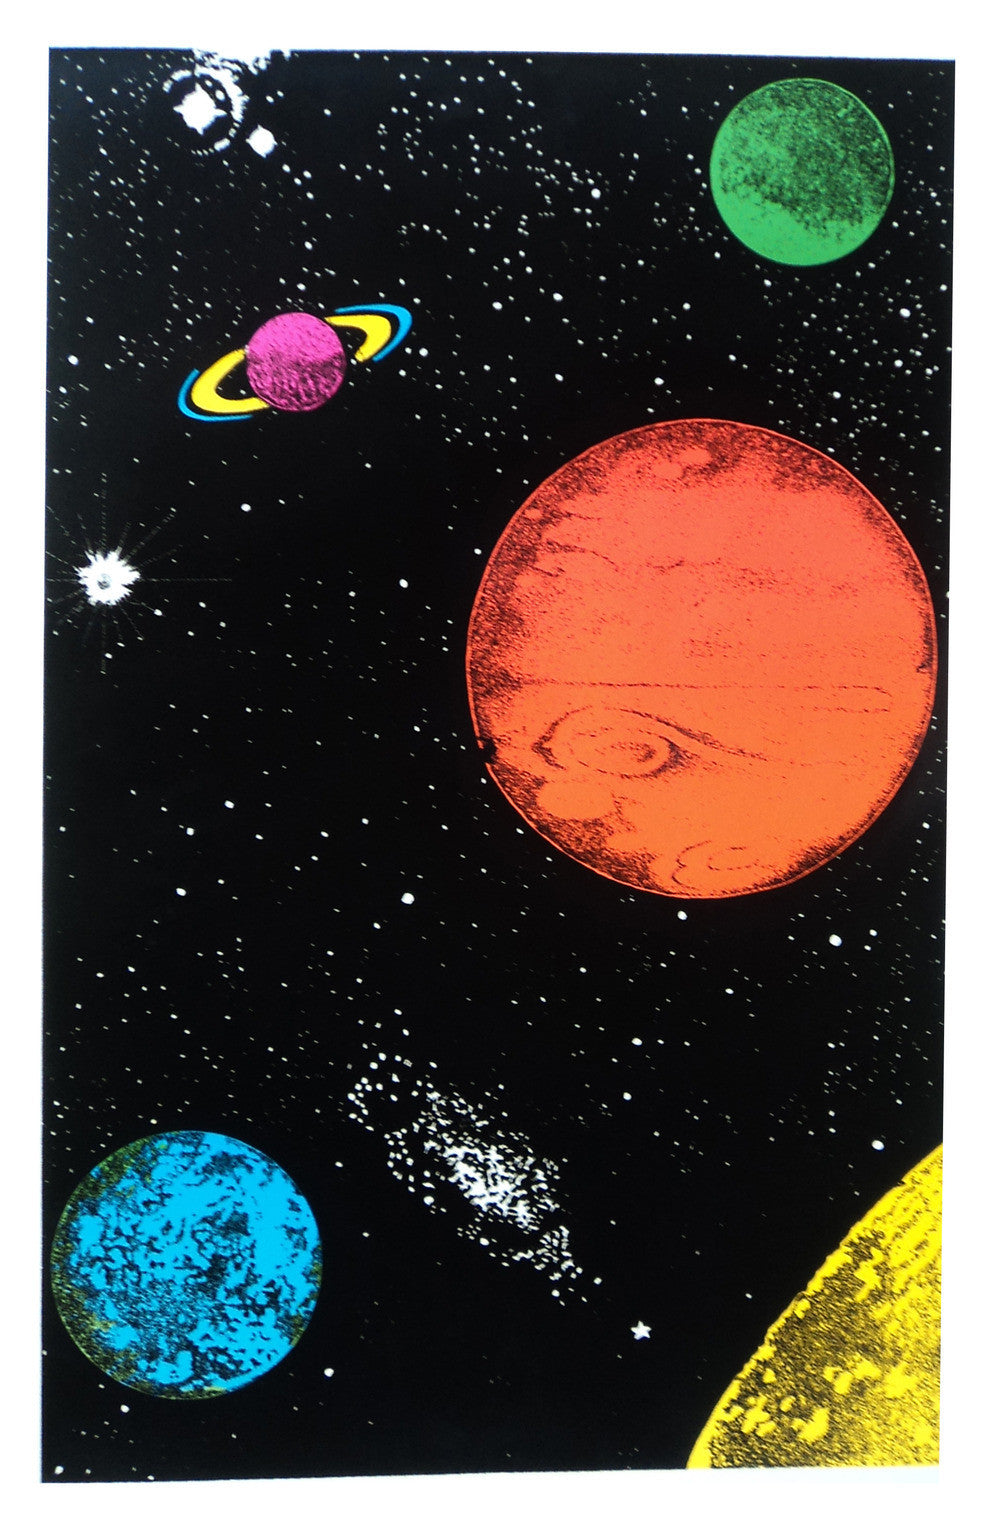 Felt Black Light Poster - 1994 - Planet